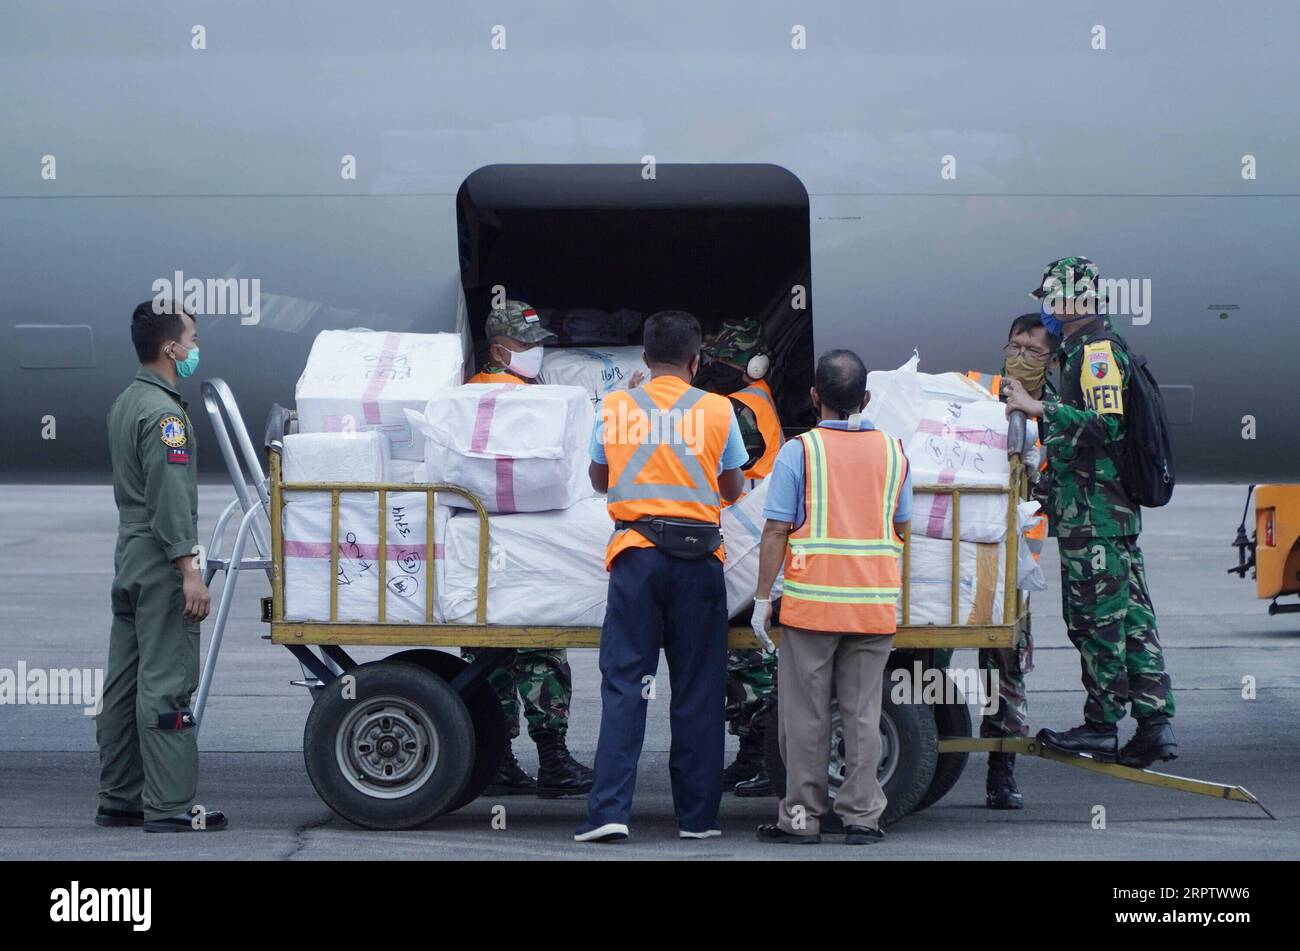 200418 -- NORD-SUMATERA, 18. April 2020 -- Offiziere der indonesischen Luftwaffe entladen Pakete mit Schutzanzügen, die an Rettungssanitäter verteilt werden sollen, aus einem Flugzeug auf der Soewondo Air Forces Base in Medan Nord-Sumatra, Indonesien, 18. April 2020. Die indonesische Regierung kündigte am Samstag 325 neue bestätigte COVID-19-Fälle an, was die Gesamtzahl der Infektionen im Archipelland auf 6.248 erhöht. Auf einer Pressekonferenz sagte Achmad Yurianto, der Sprecher der Regierung für die COVID-19-bezogenen Angelegenheiten, dass es auch 15 neue Todesfälle gibt, was die Gesamtzahl der Todesopfer auf 535 erhöht, die höchste in Stockfoto